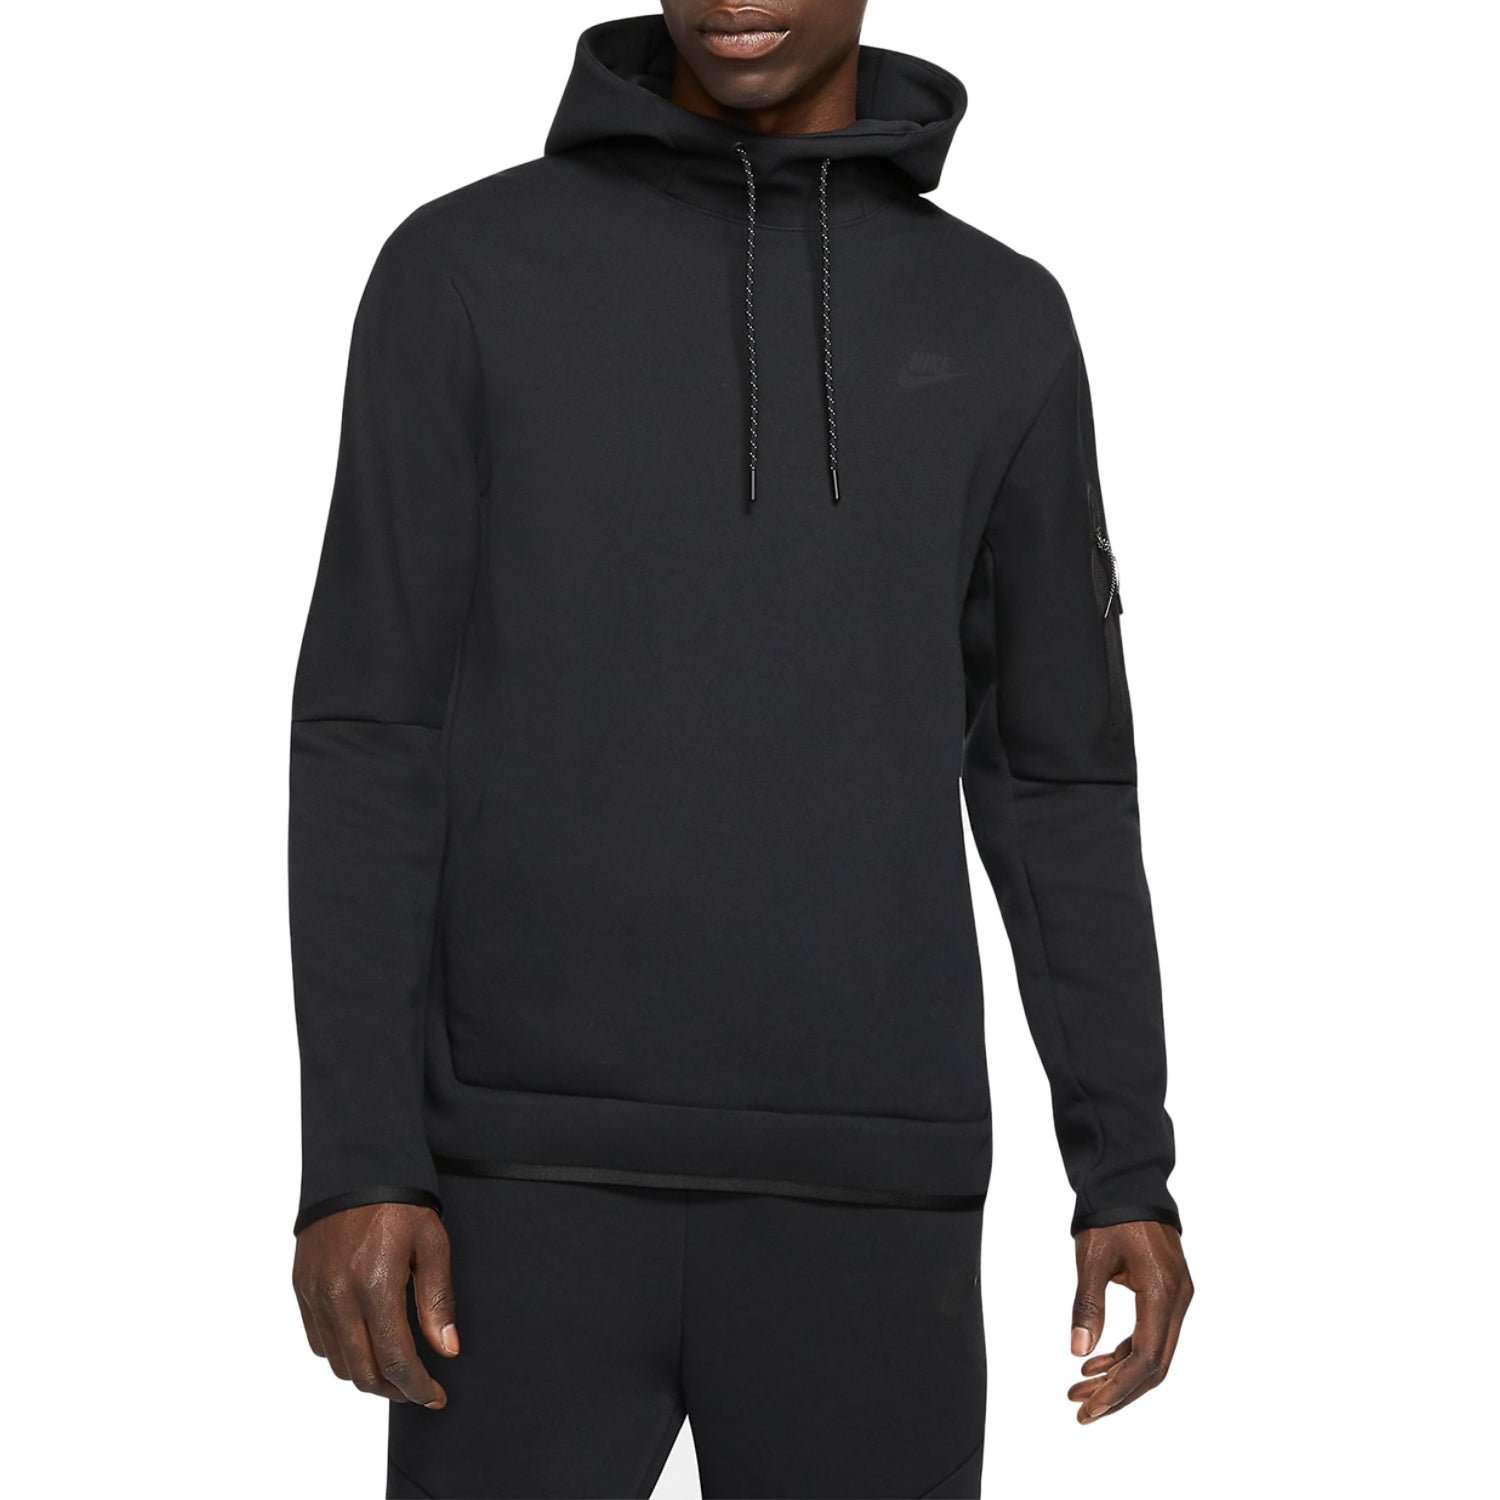 Nike Sportswear Tech Fleece Pullover Hoodie Black/Black